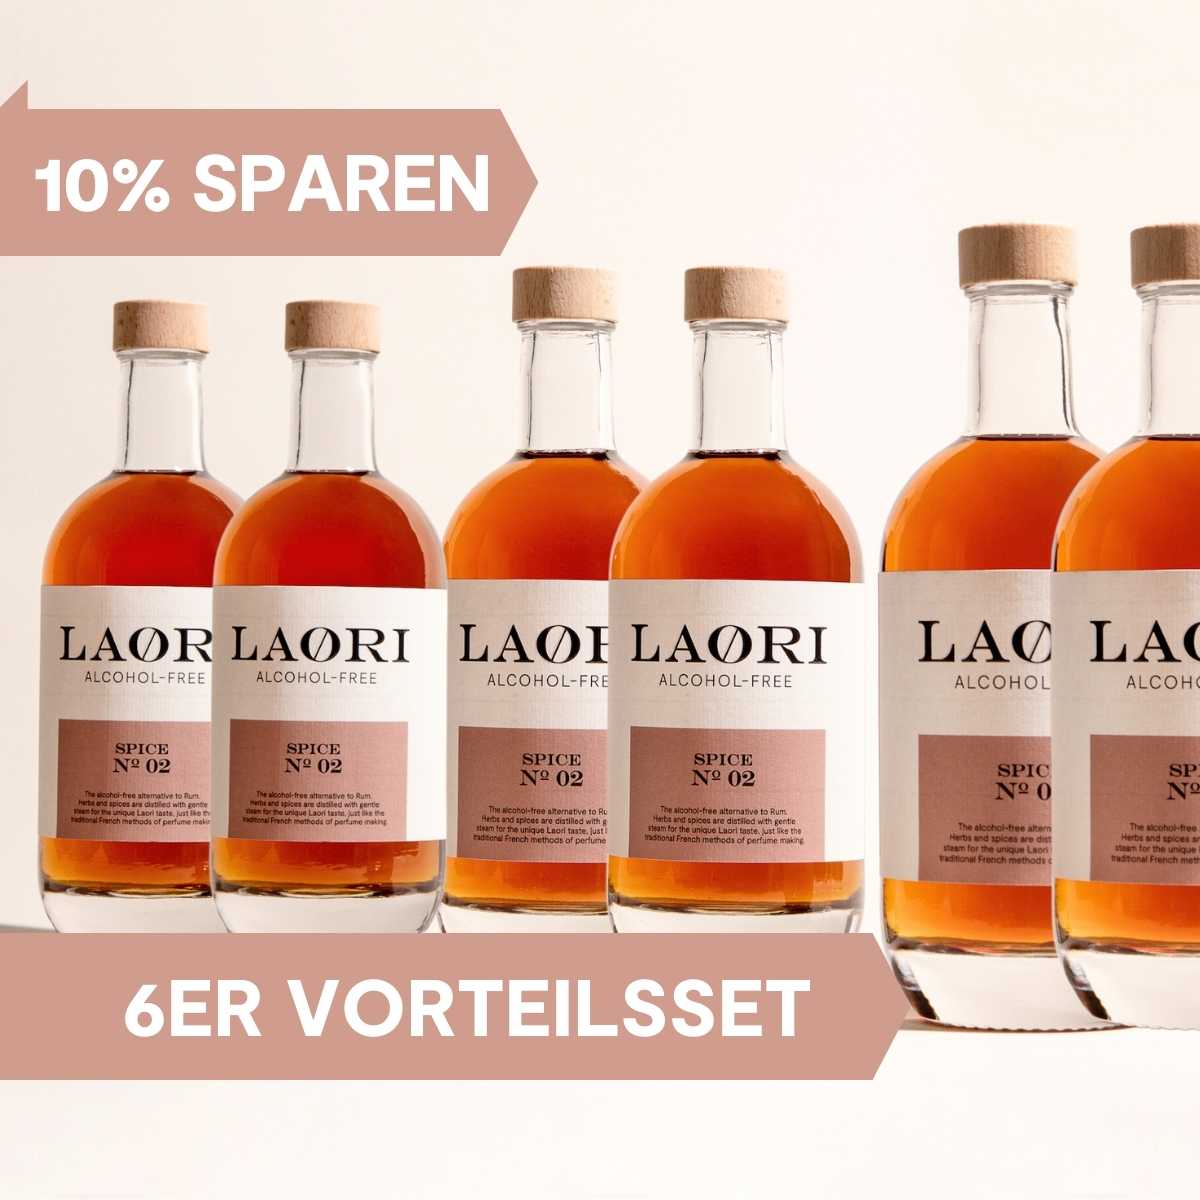 Have it all: 6x Laori Spice No 02 (0.5l) - value set